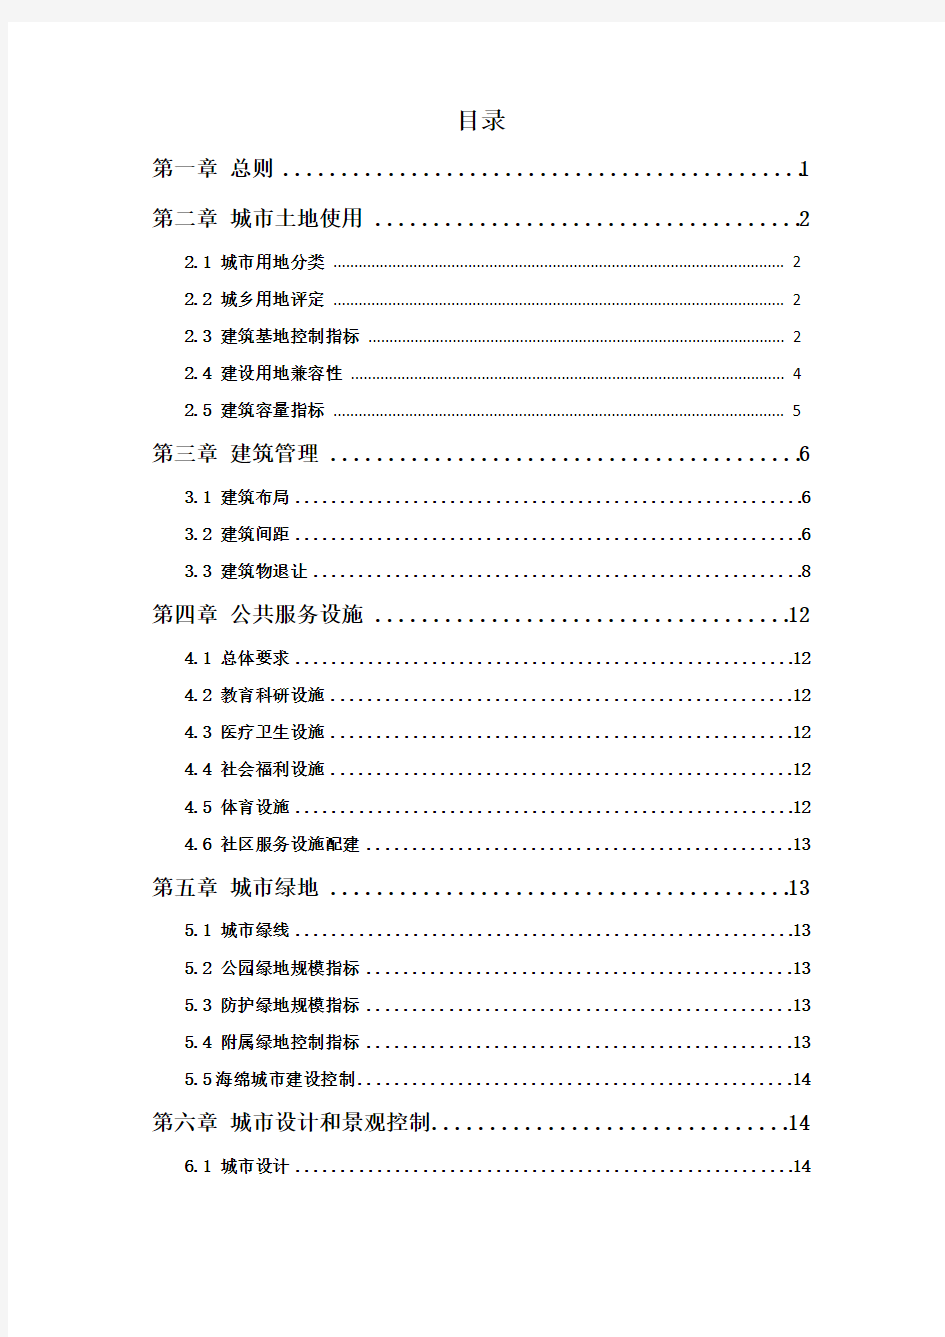 (完整版)01-陕西省城市规划技术管理规定2018年调整终稿